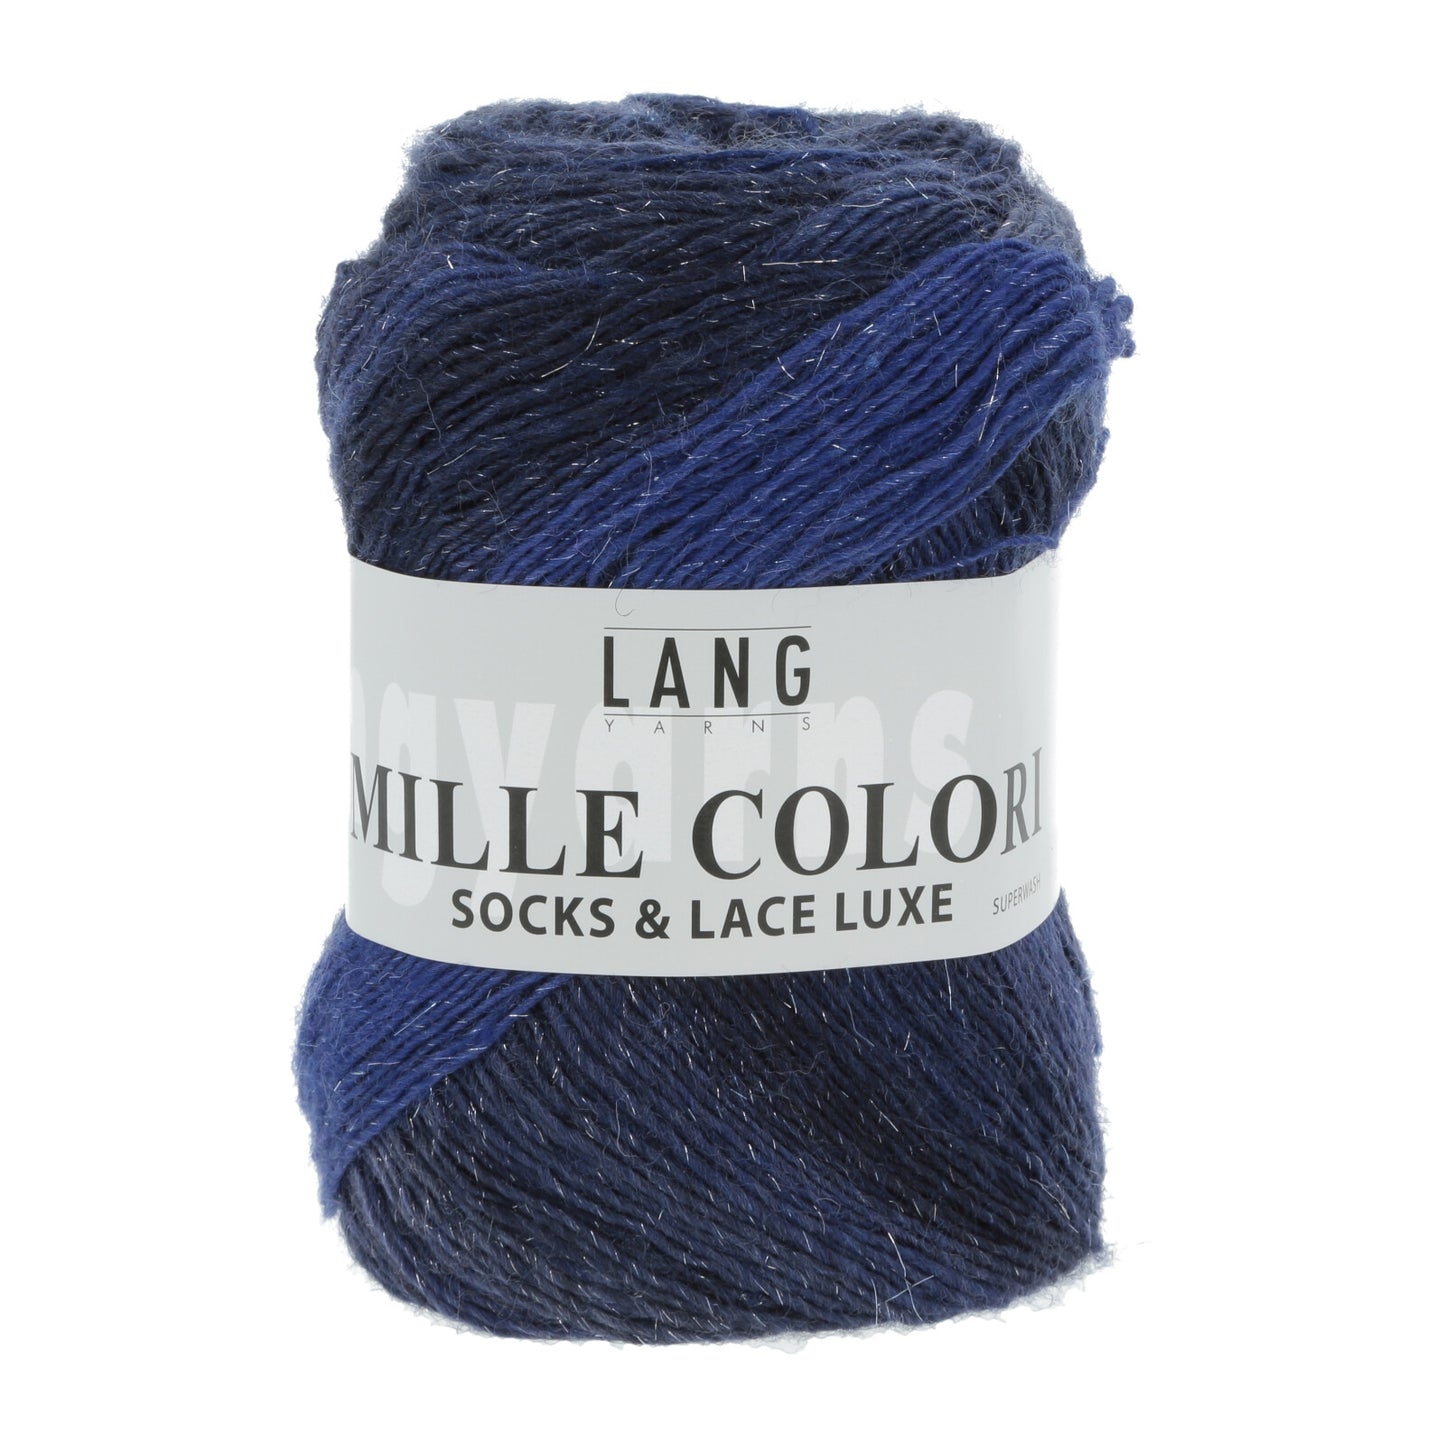 Mille Colori Socks and Lace Luxe - strømpegarn med flot farveskifte og diskret glimmertråd.